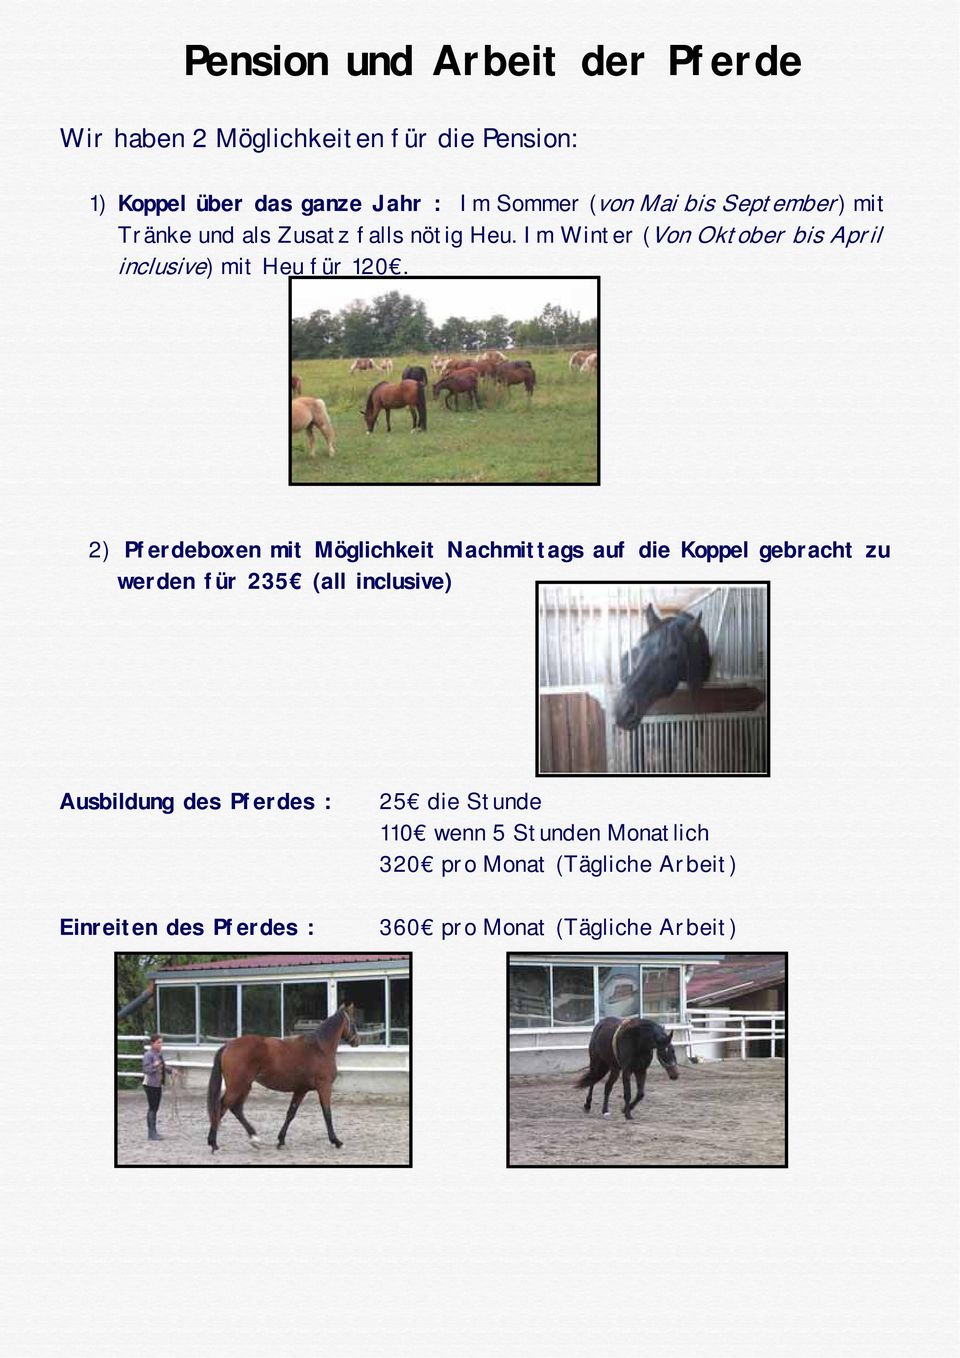 2) Pferdeboxen mit Möglichkeit Nachmittags auf die Koppel gebracht zu werden für 235 (all inclusive) Ausbildung des Pferdes